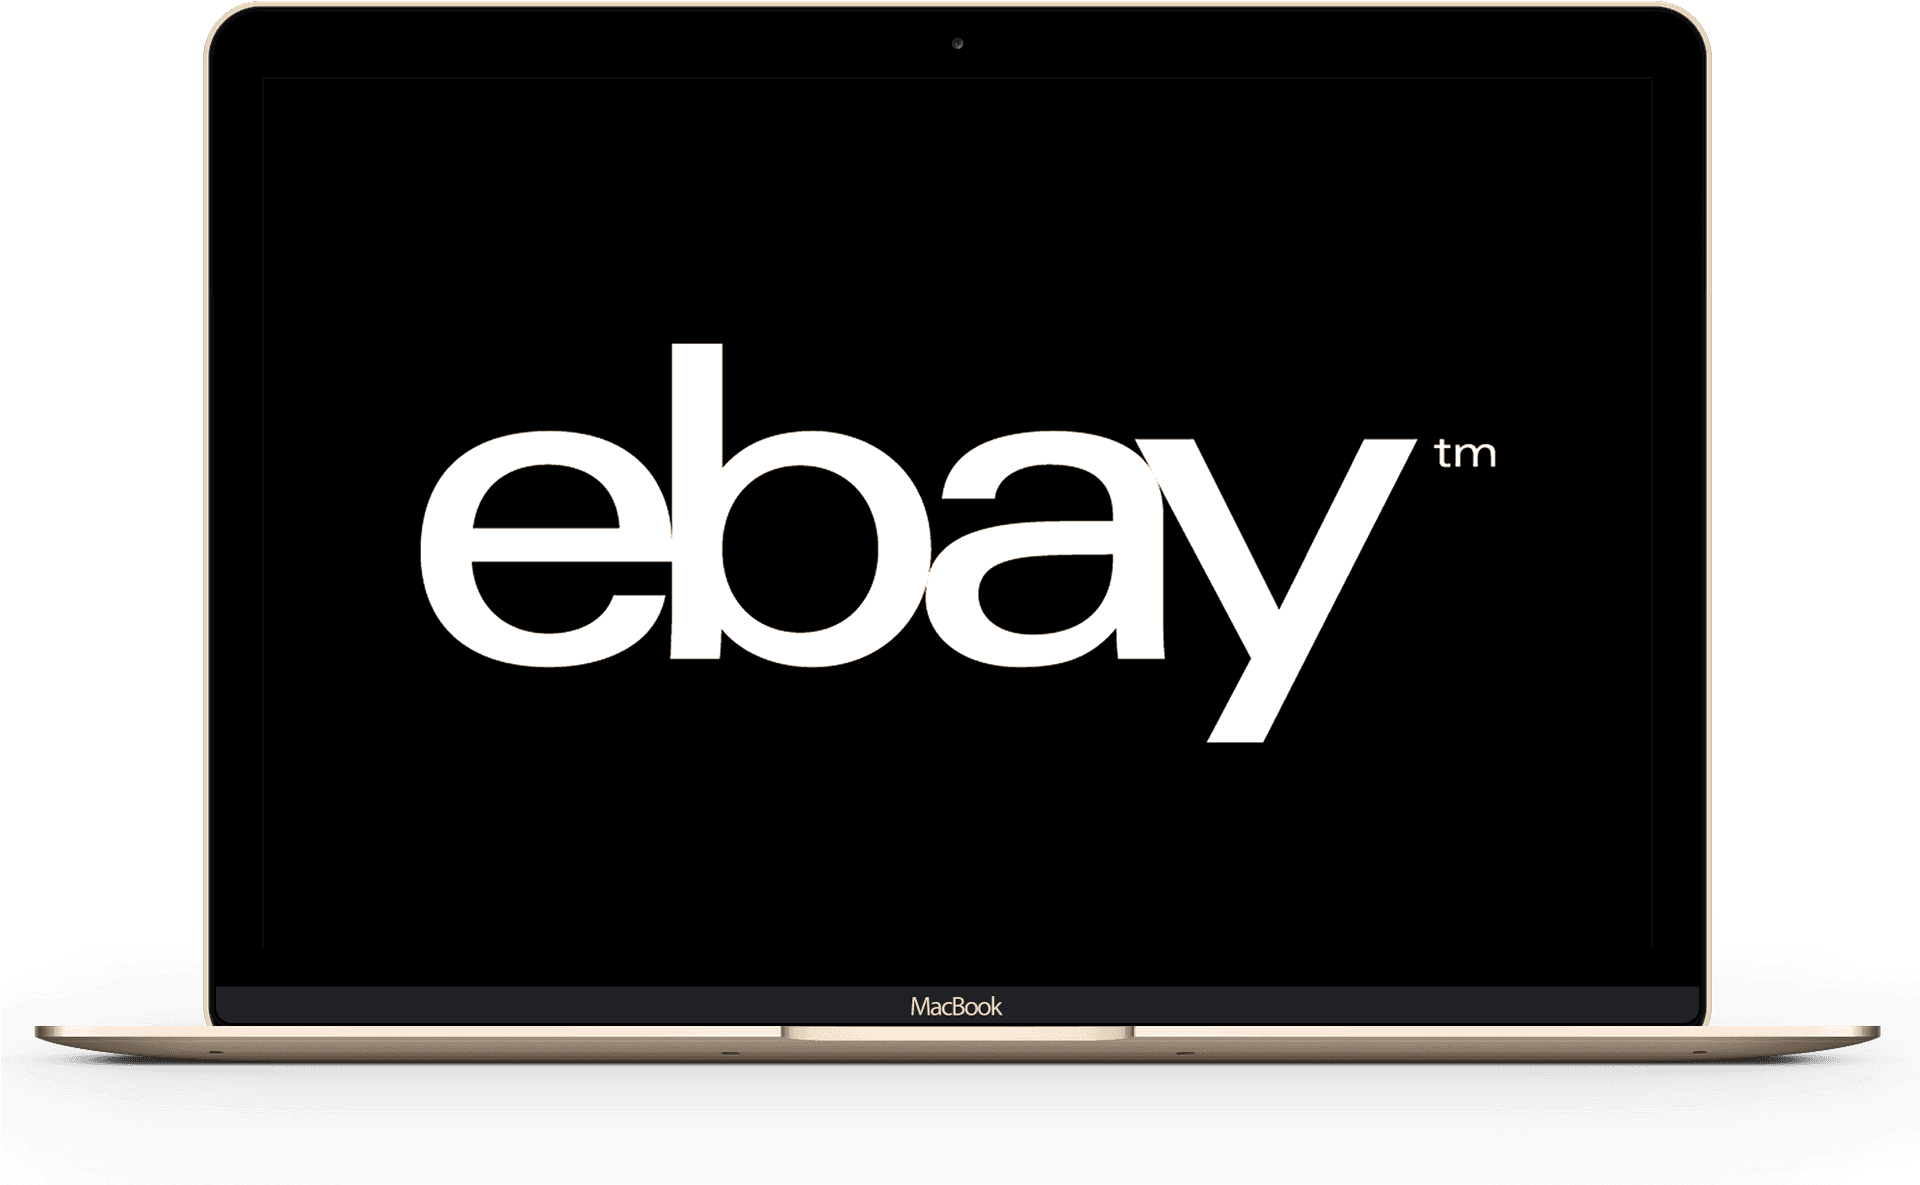 Ebay Logoon Laptop Screen PNG image